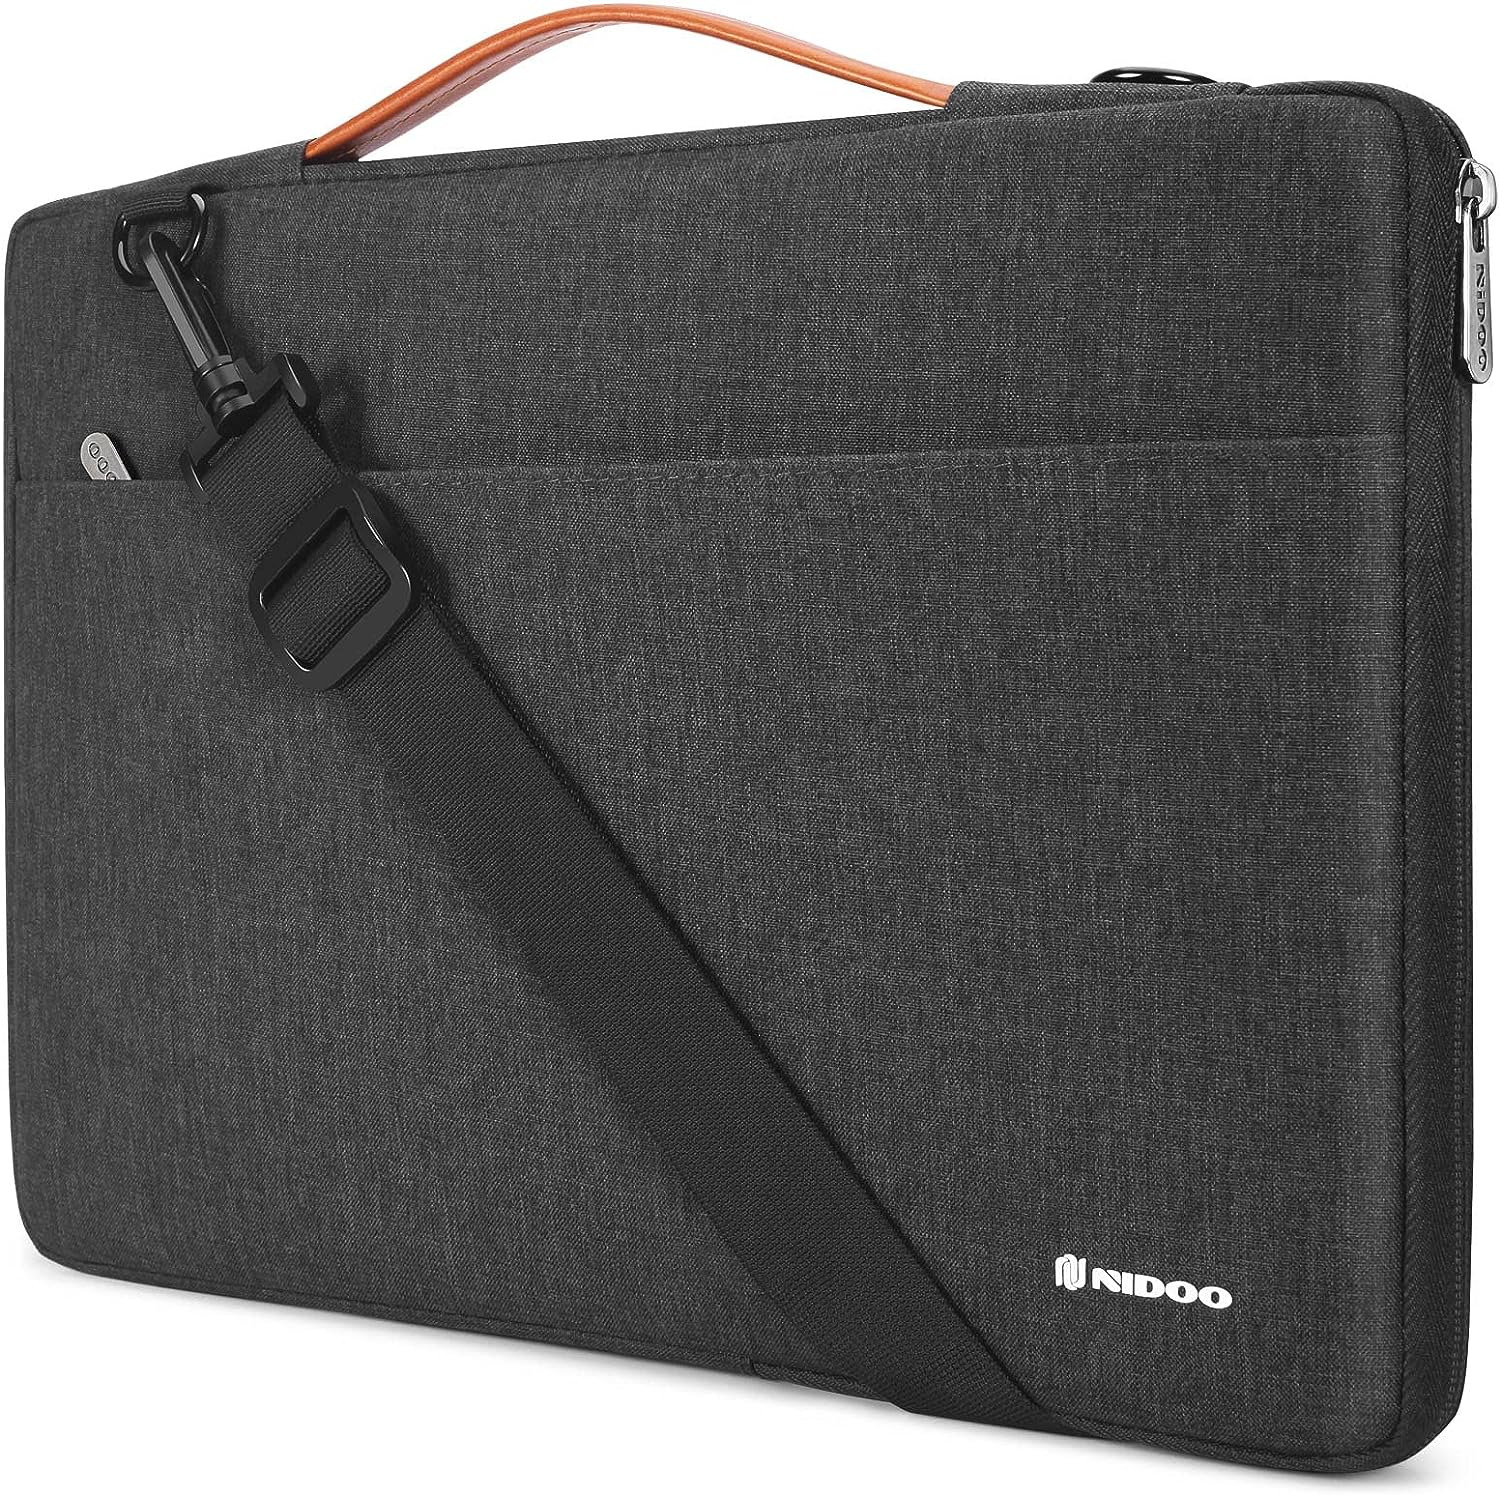 Laptop Sleeve 15.6 Inch Case Bag 15 Notebook Carry Shoulder Backpack